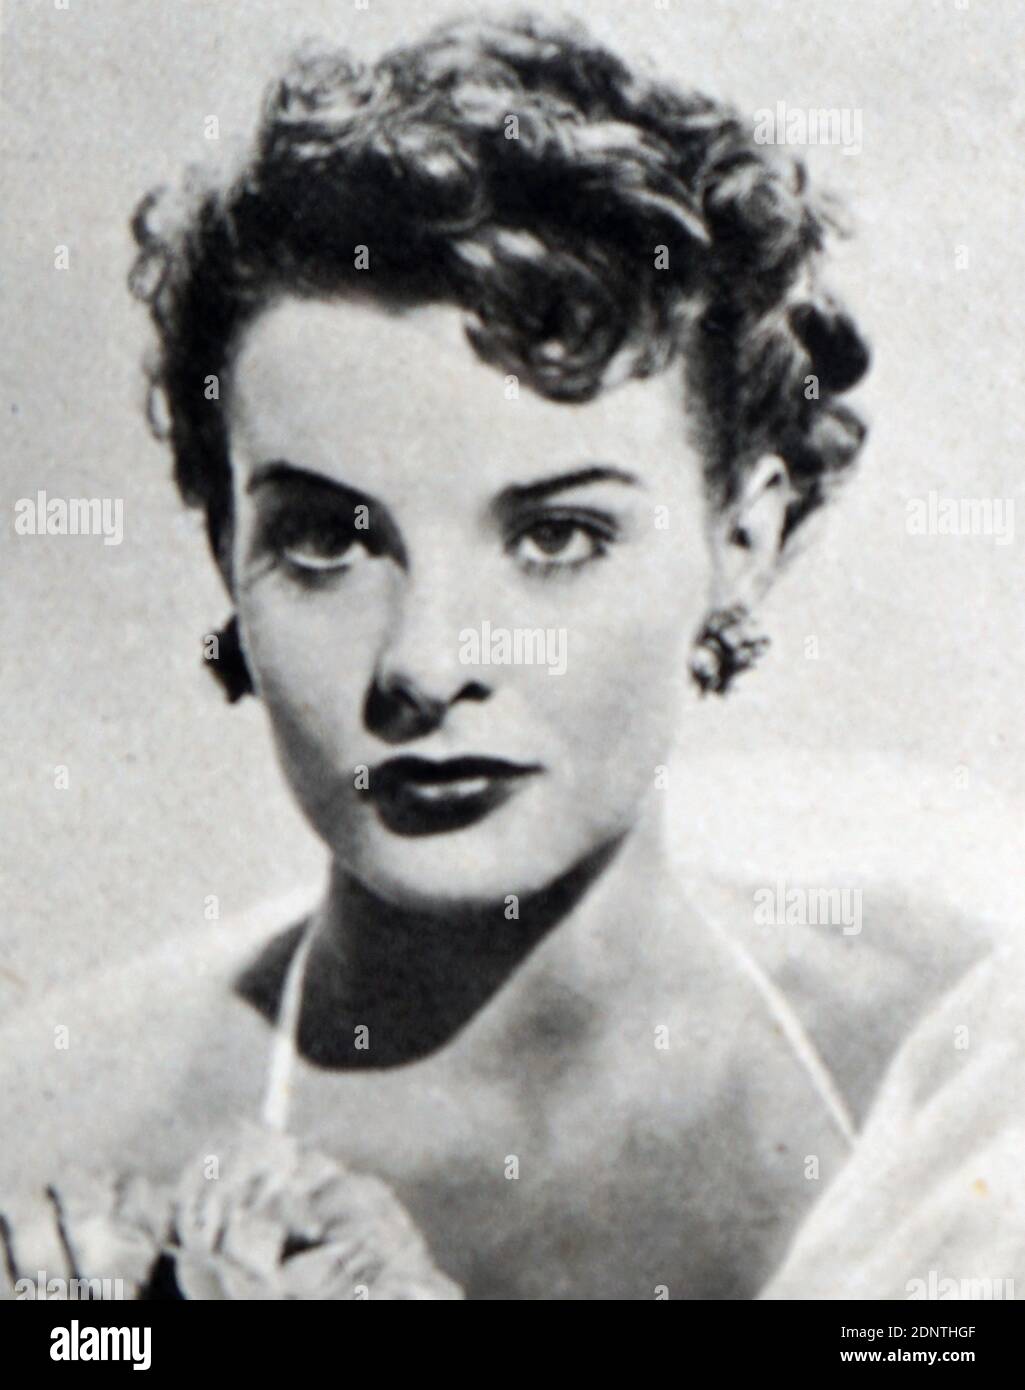 Fotografía de Viveca Lindfors (1920-1995) una actriz de cine, cine y televisión estadounidense nacida en Suecia. Foto de stock